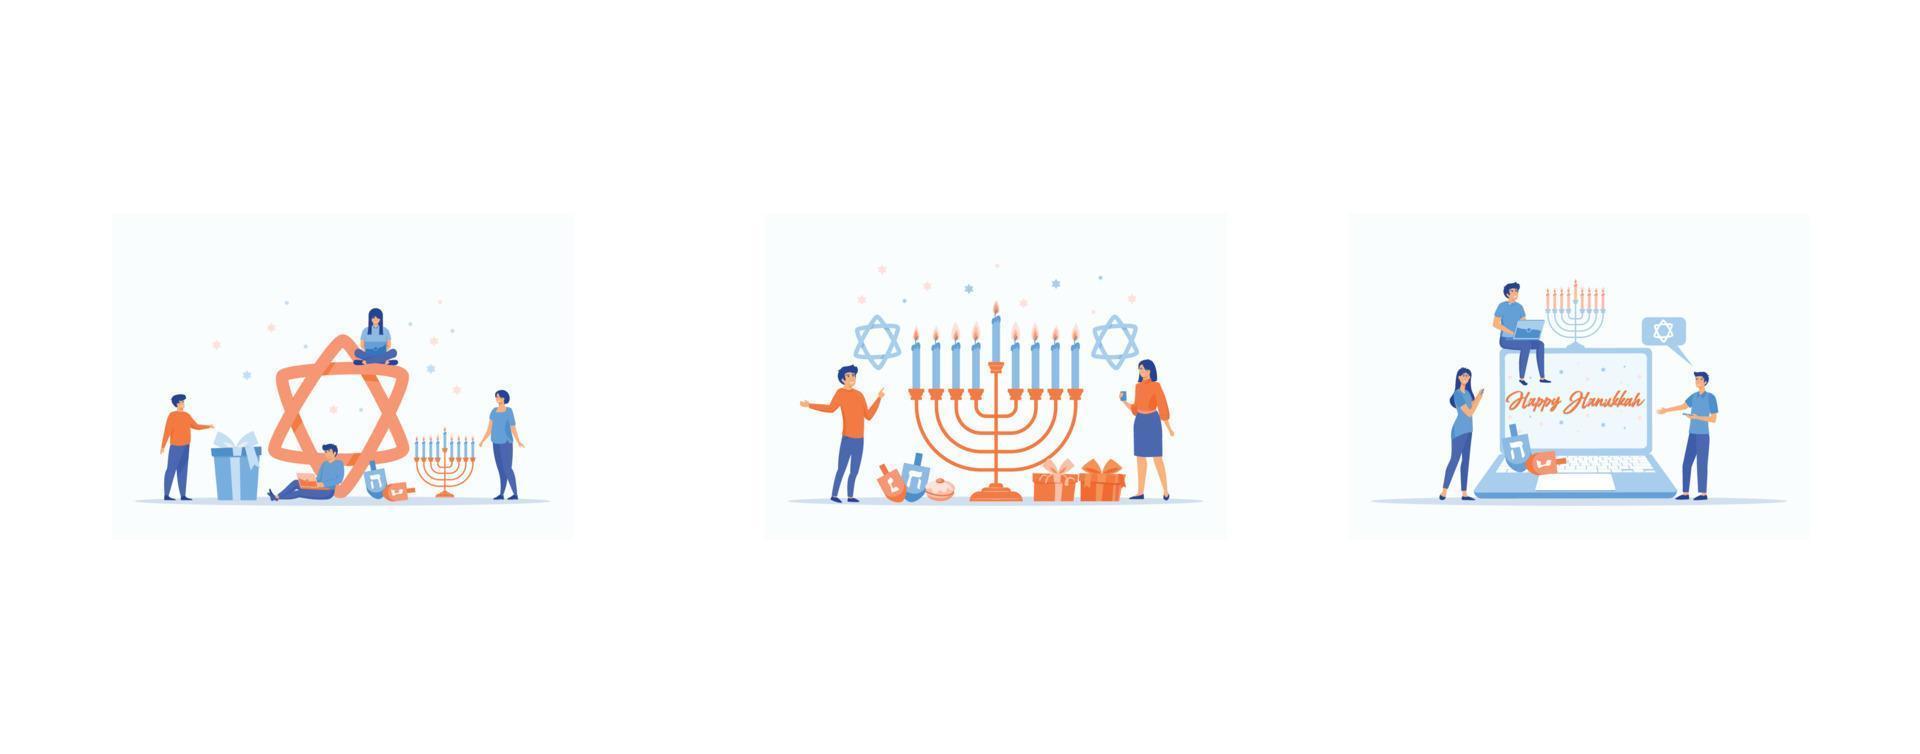 contento hanukkah. tradizionale ebraico vacanza con minuscolo persone e simboli - menorah candele, dreidels Filatura superiore, stella davide. moderno piatto cartone animato stile, impostato piatto vettore moderno illustrazione